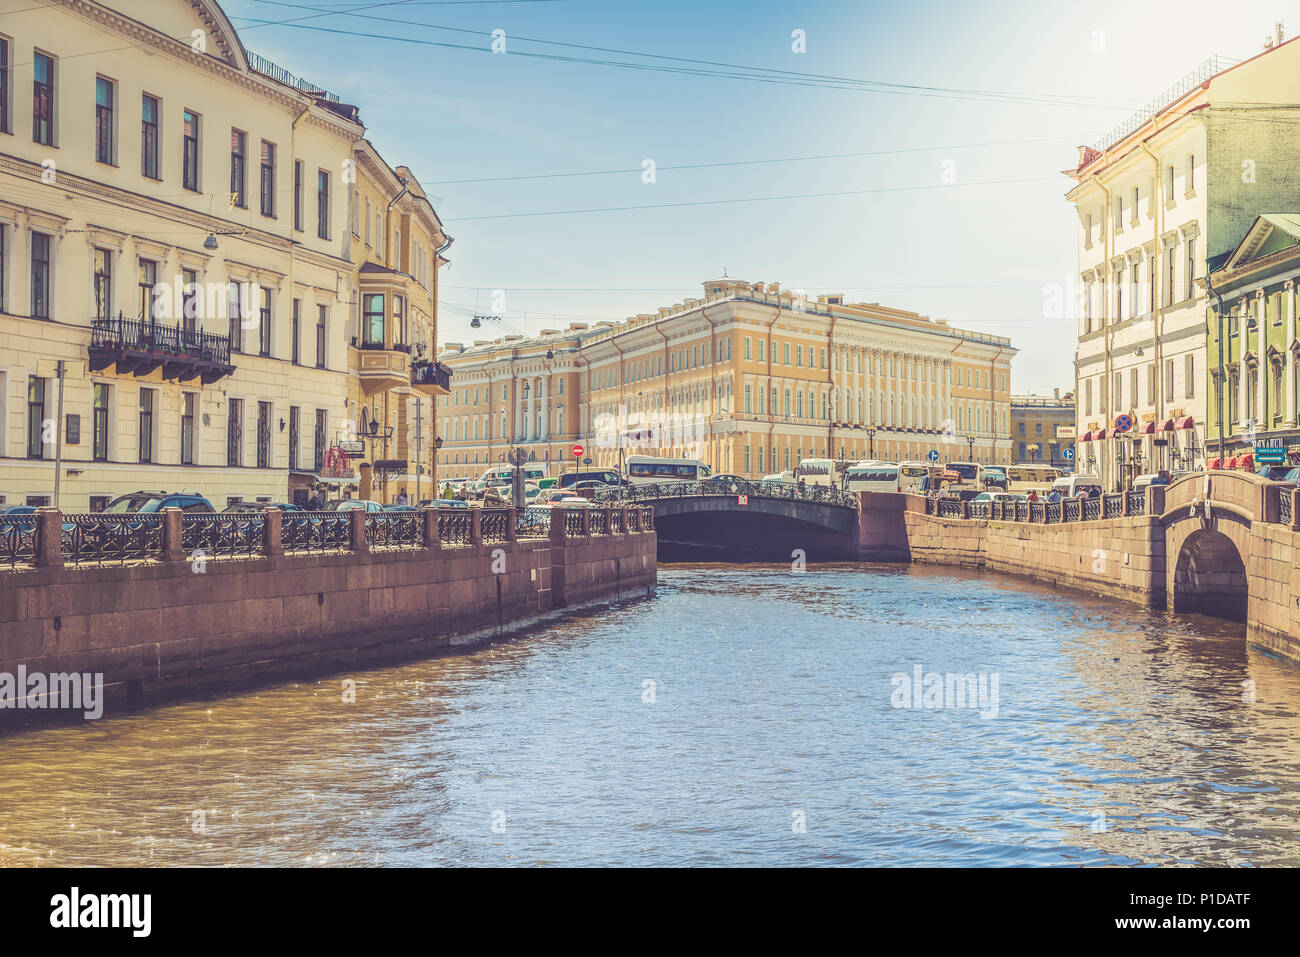 San Petersburgo, Rusia - 24 mayo, 2018: Hermoso edificio a lo largo de los diques de los ríos y canales de San Petersburgo, Rusia Foto de stock